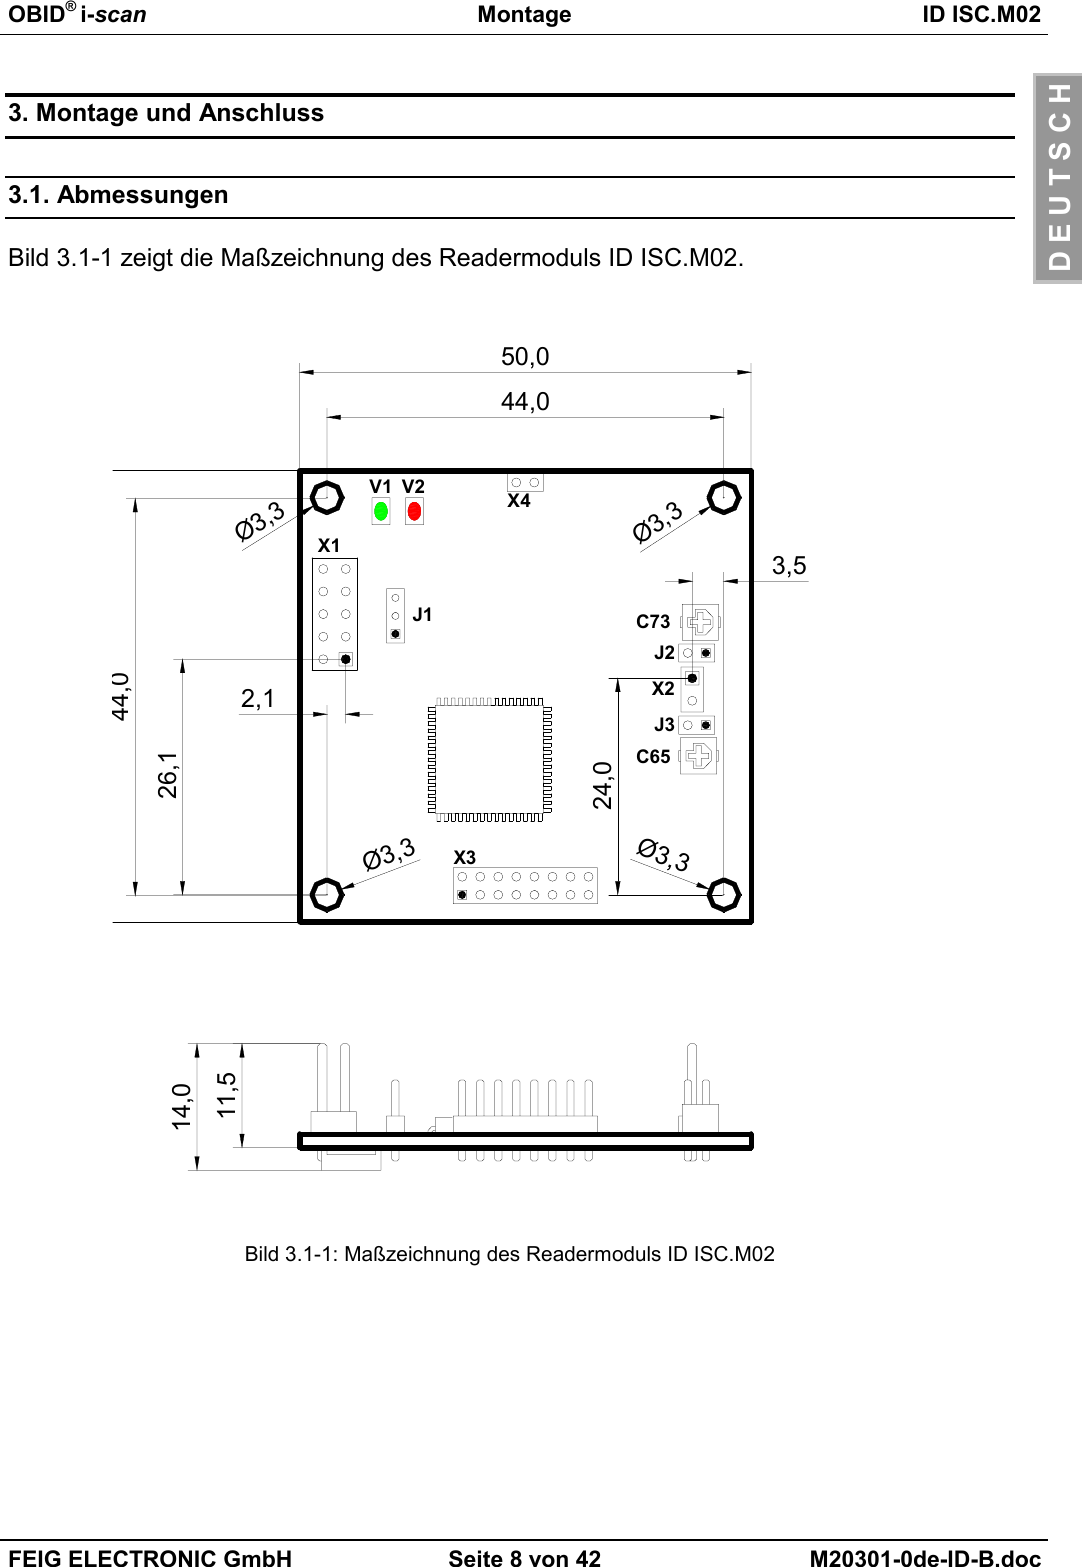 OBID® i-scan Montage ID ISC.M02FEIG ELECTRONIC GmbH Seite 8 von 42 M20301-0de-ID-B.docD E U T S C H3. Montage und Anschluss3.1. AbmessungenBild 3.1-1 zeigt die Maßzeichnung des Readermoduls ID ISC.M02.Bild 3.1-1: Maßzeichnung des Readermoduls ID ISC.M0226,12,1Ø3,3Ø3,3Ø3,3Ø3,314,011,5J2J3X2X3X444,024,03,5X1J1V2V1C6544,050,0C73